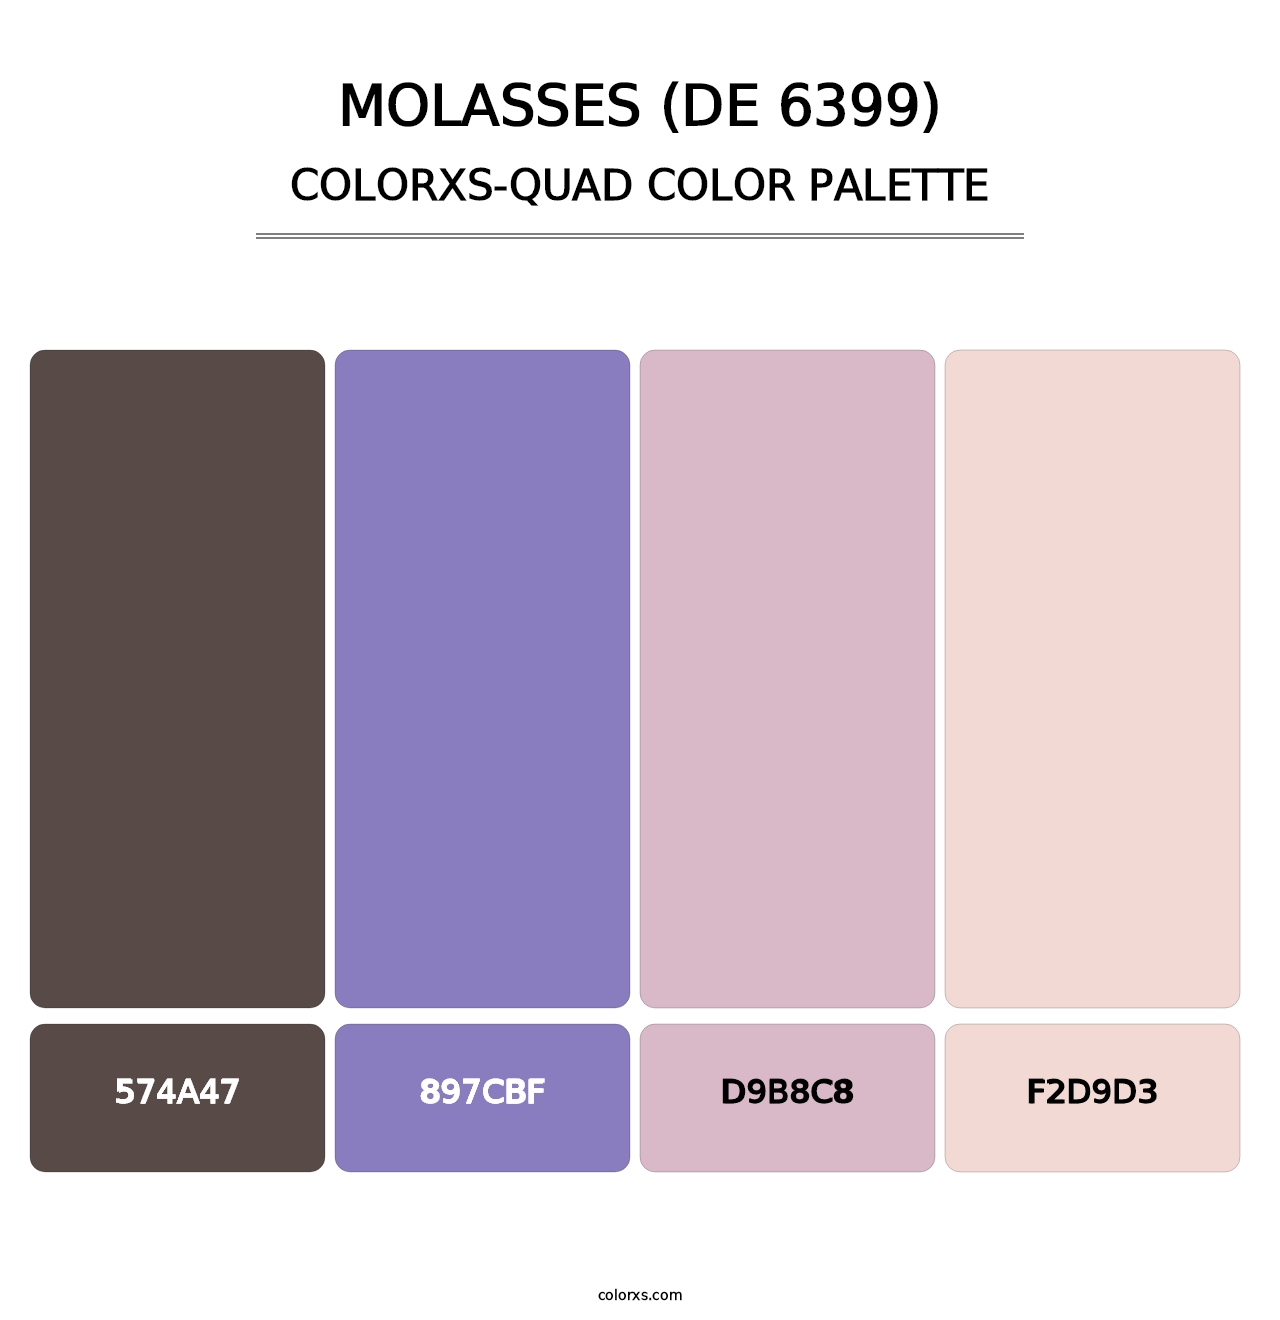 Molasses (DE 6399) - Colorxs Quad Palette